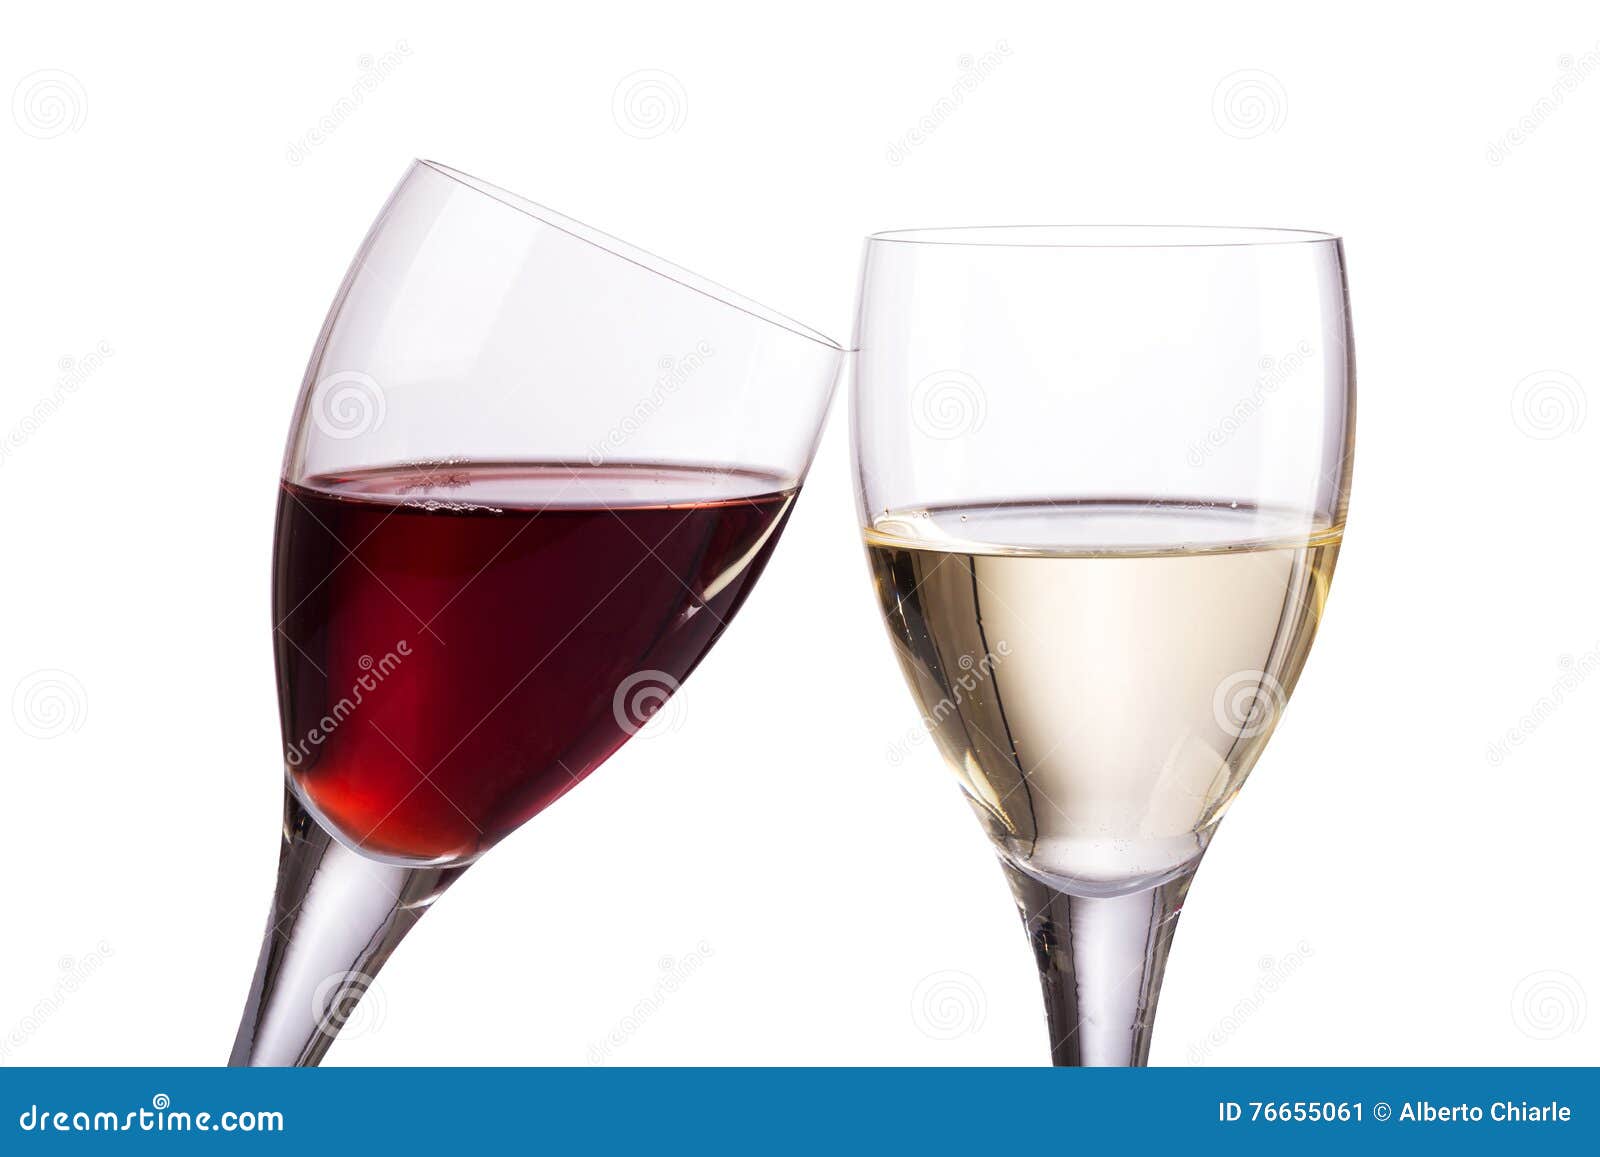 Rode En Wijnglazen Op Witte Achtergrond Stock Afbeelding - Image of alcohol, staaf: 76655061